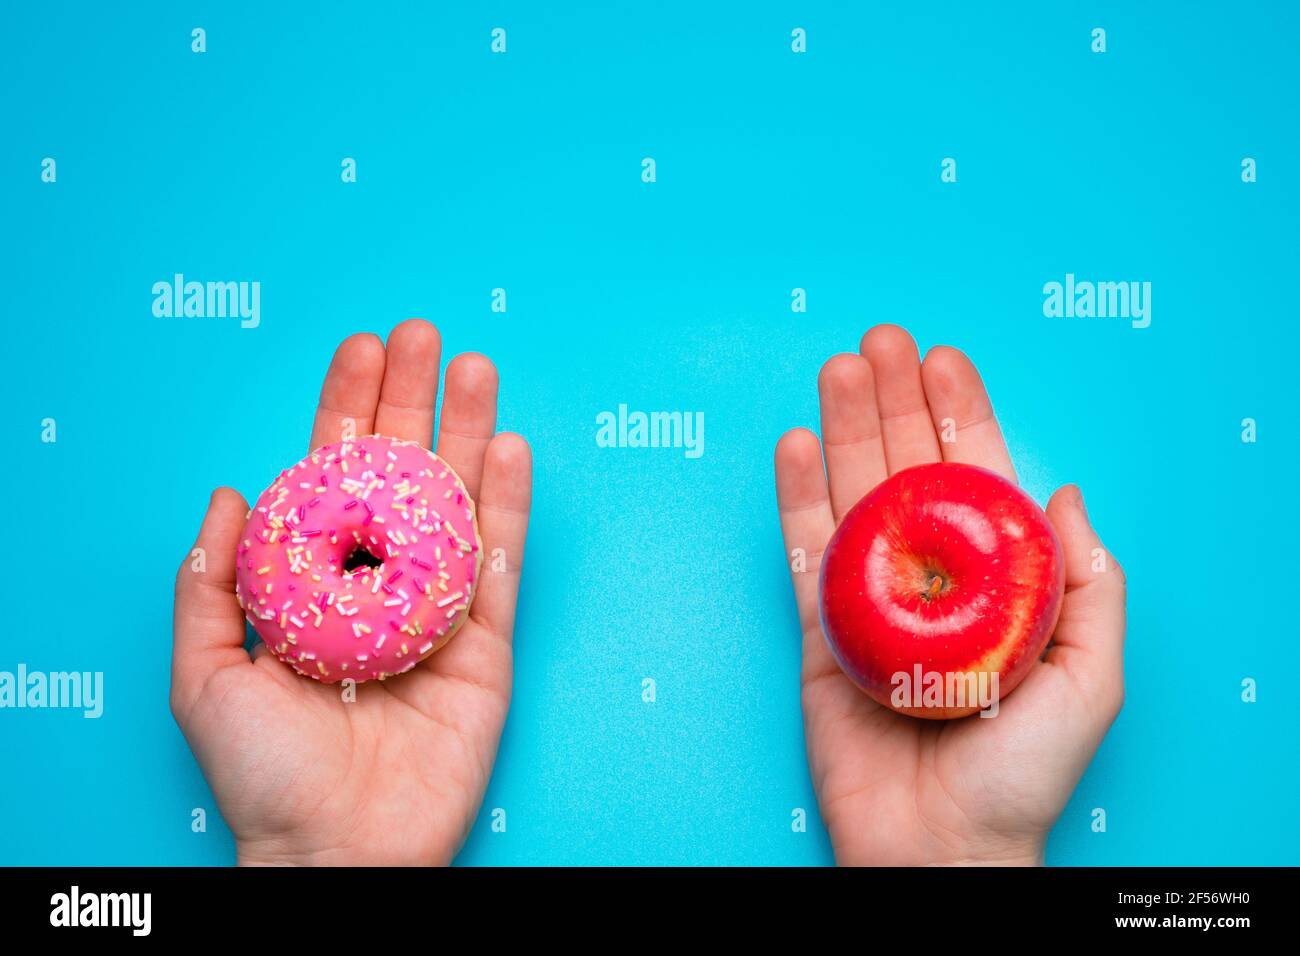 Frau, die einen Apfel und einen Donut in den Händen hält. Gesunde Lebensweise oder Ernährung Konzept. Stockfoto